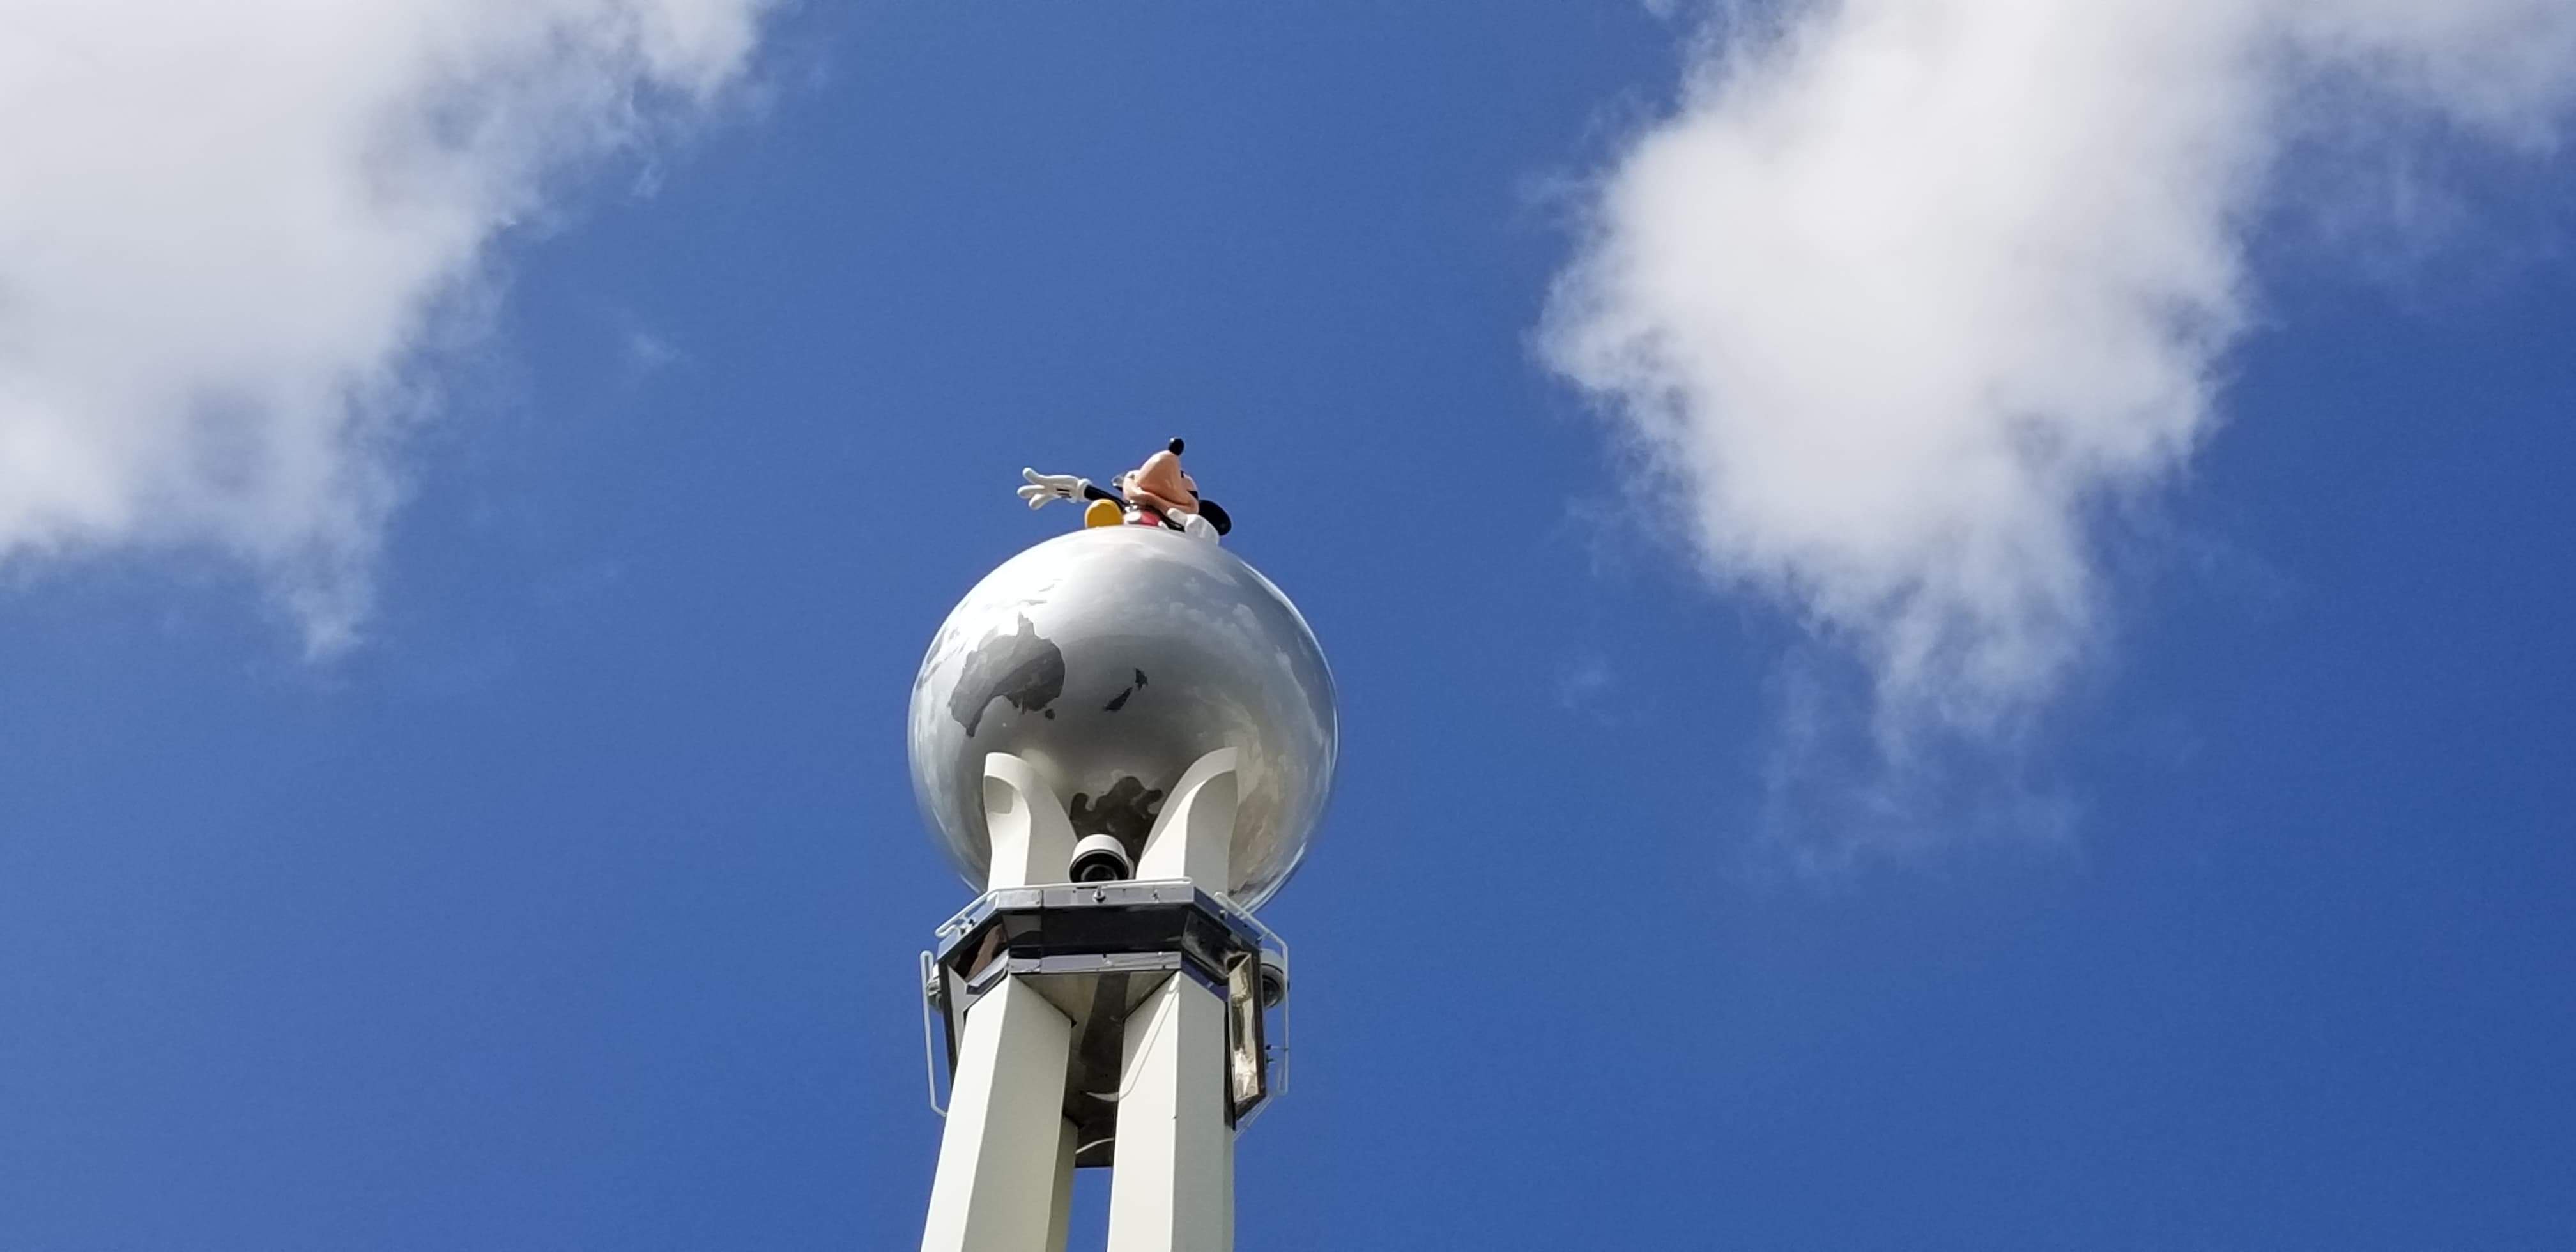 The Mickey Globe Has Returned to Disney’s Hollywood Studios